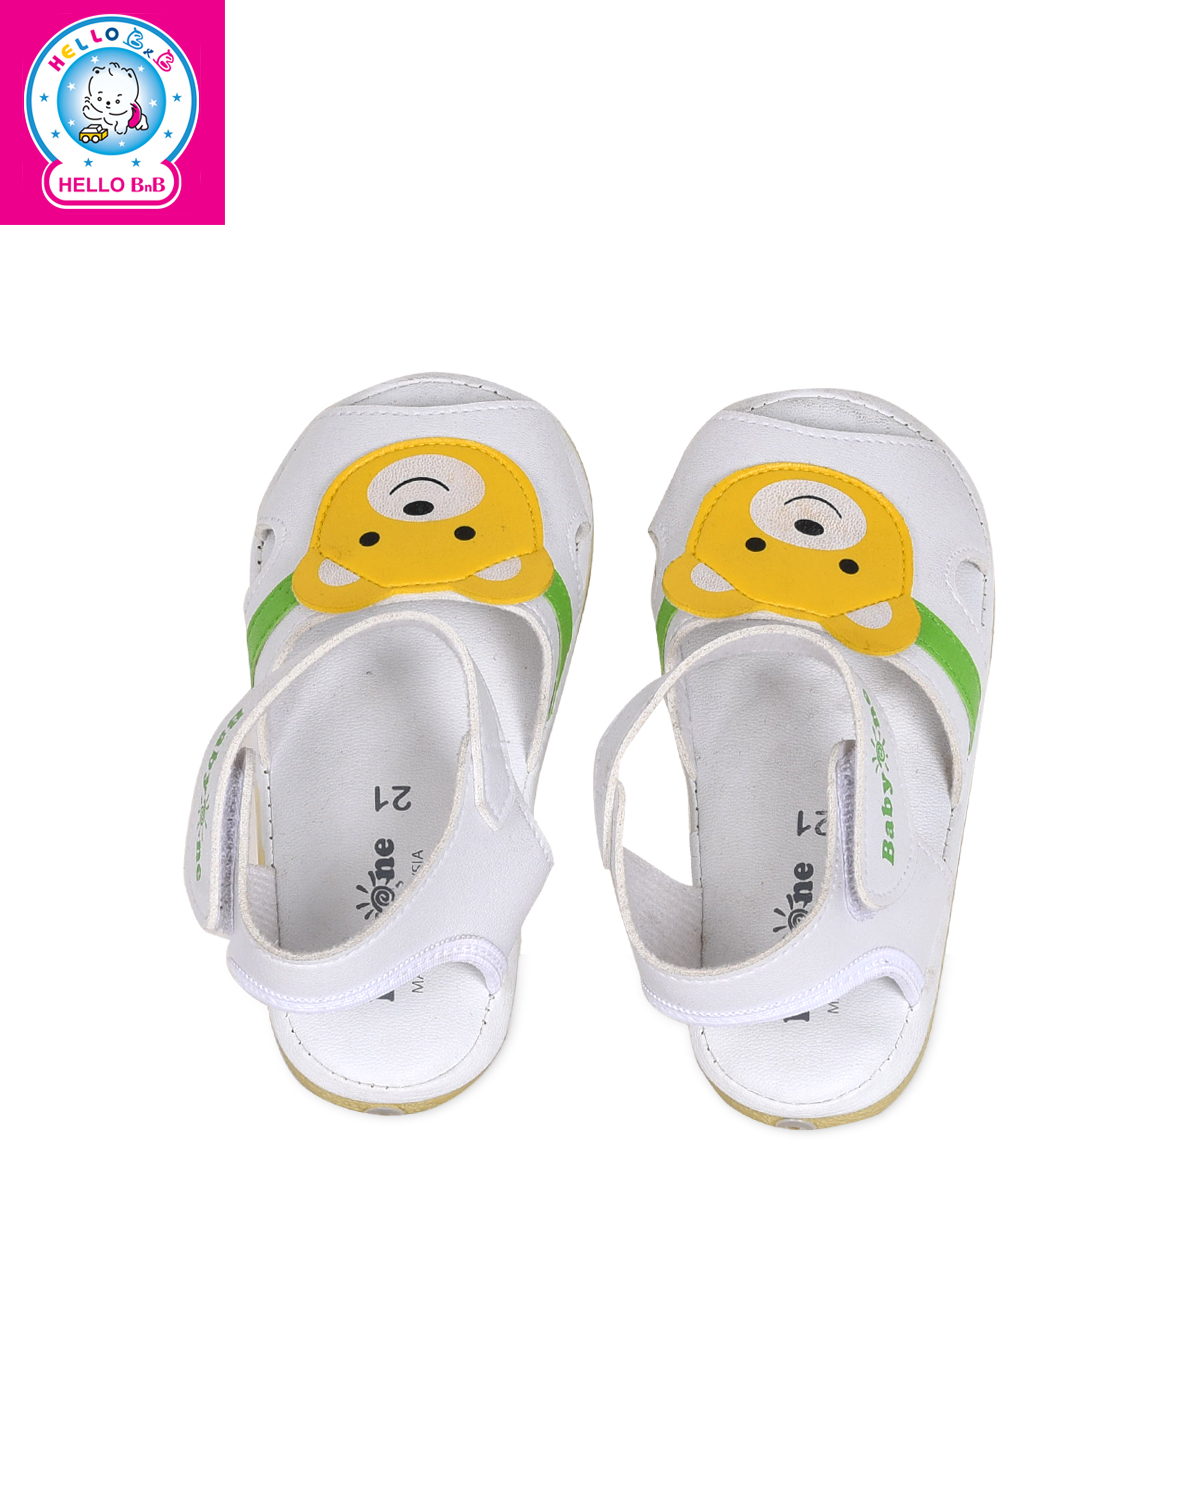 Giày sandal BabyOne 0809 size 21 White